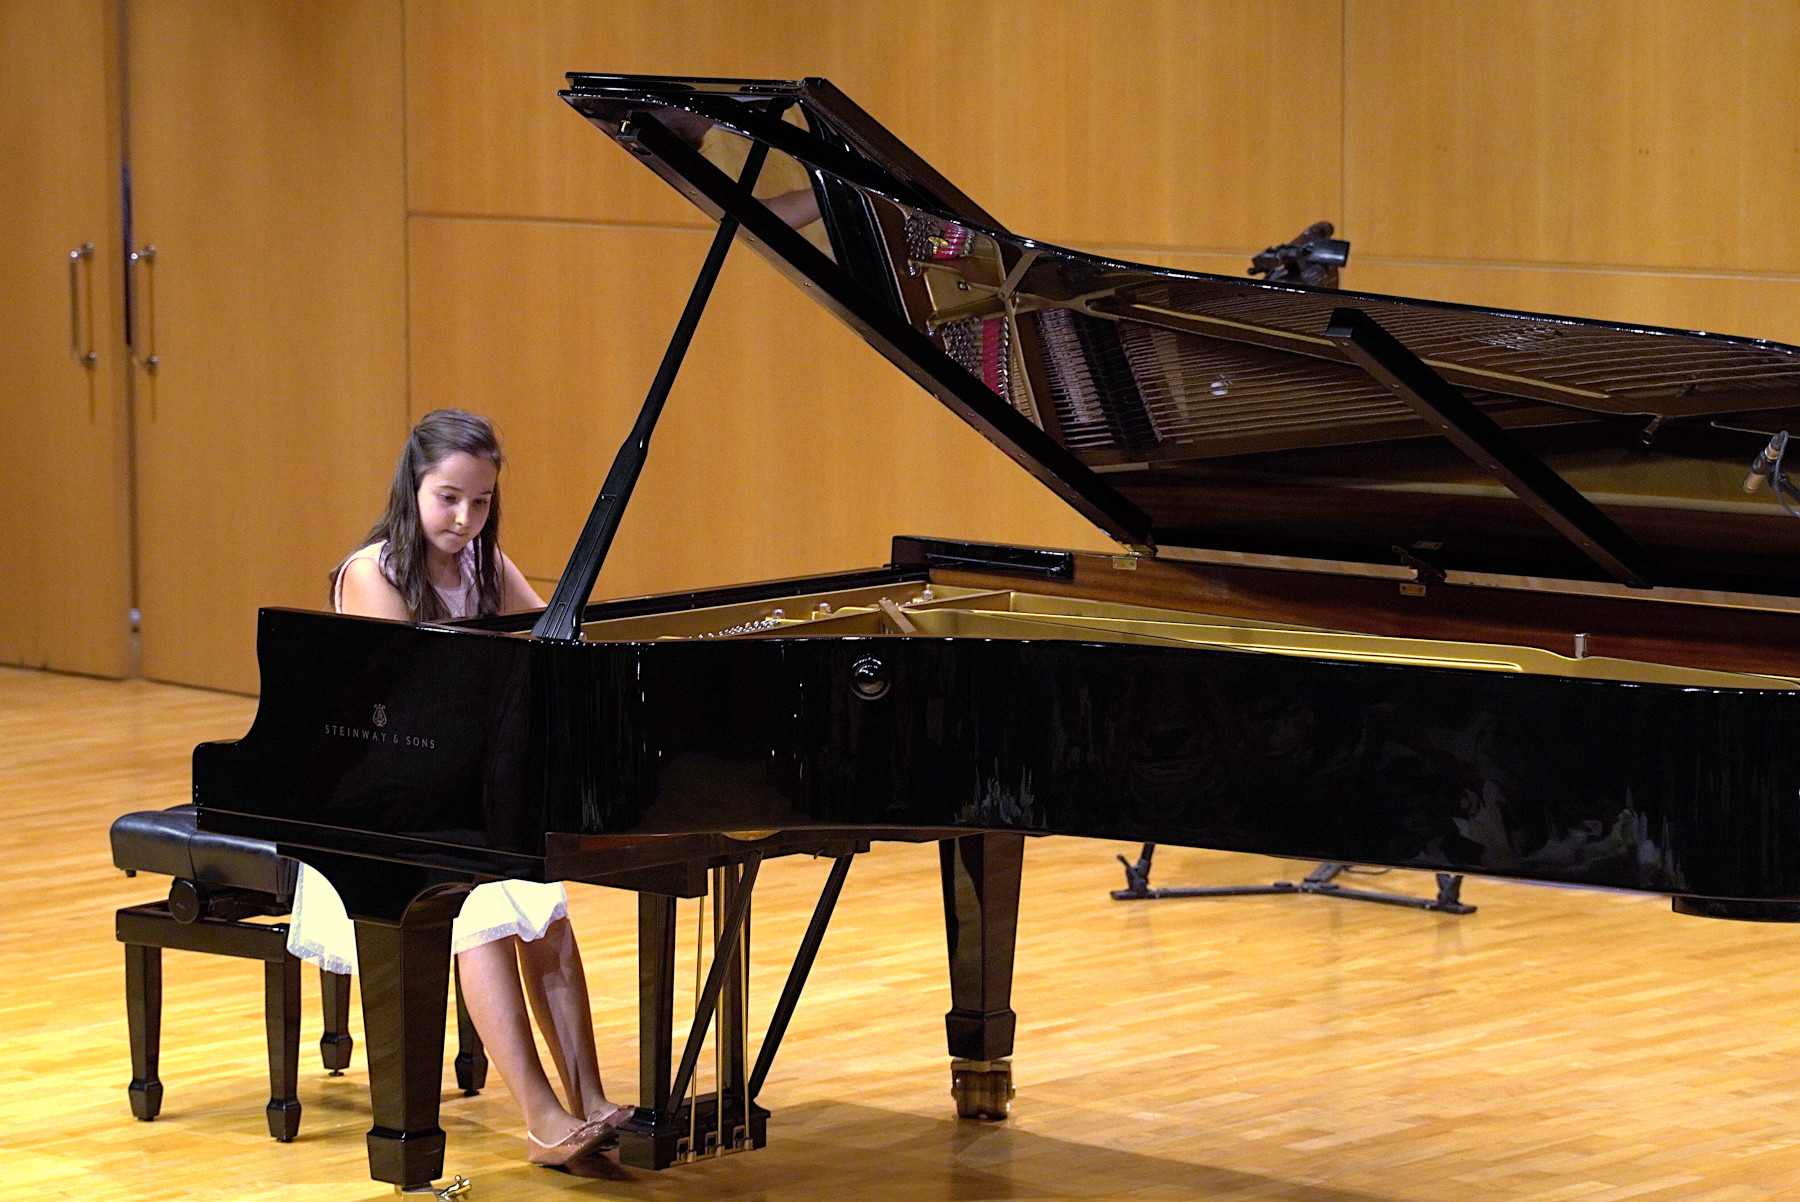 La guanyadora del premi Carme Grasa en la categoria I, Lucía López, tocant una peça durant l'acte de lliurament dels guardons